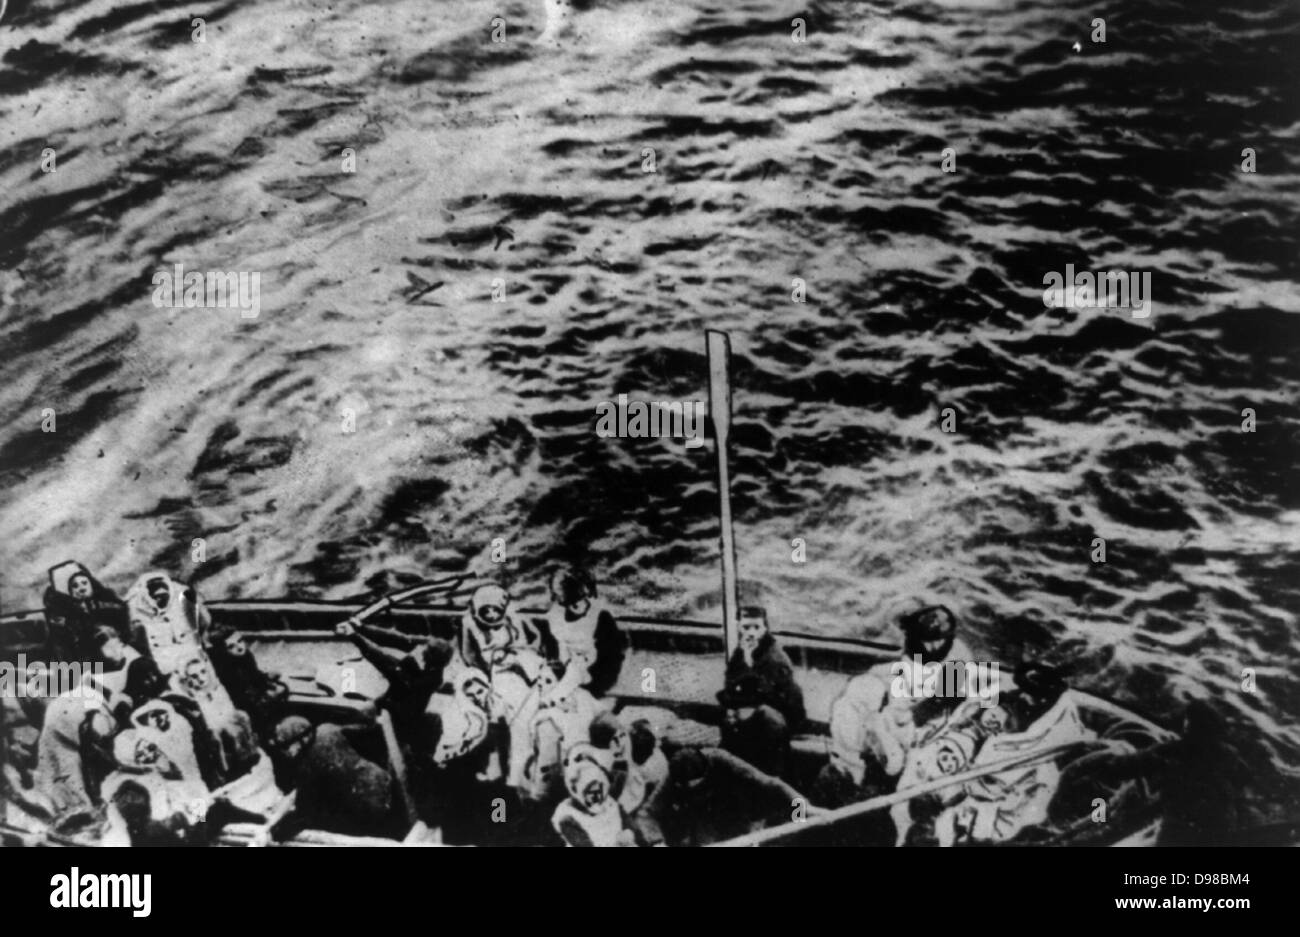 Titanic superstiti sul modo per salvare la nave Carpathia Data di creazione/Pubblicato: 1912 aprile. Media: 1 stampa fotografica. Sommario: gruppo di persone in una scialuppa di salvataggio. Foto Stock